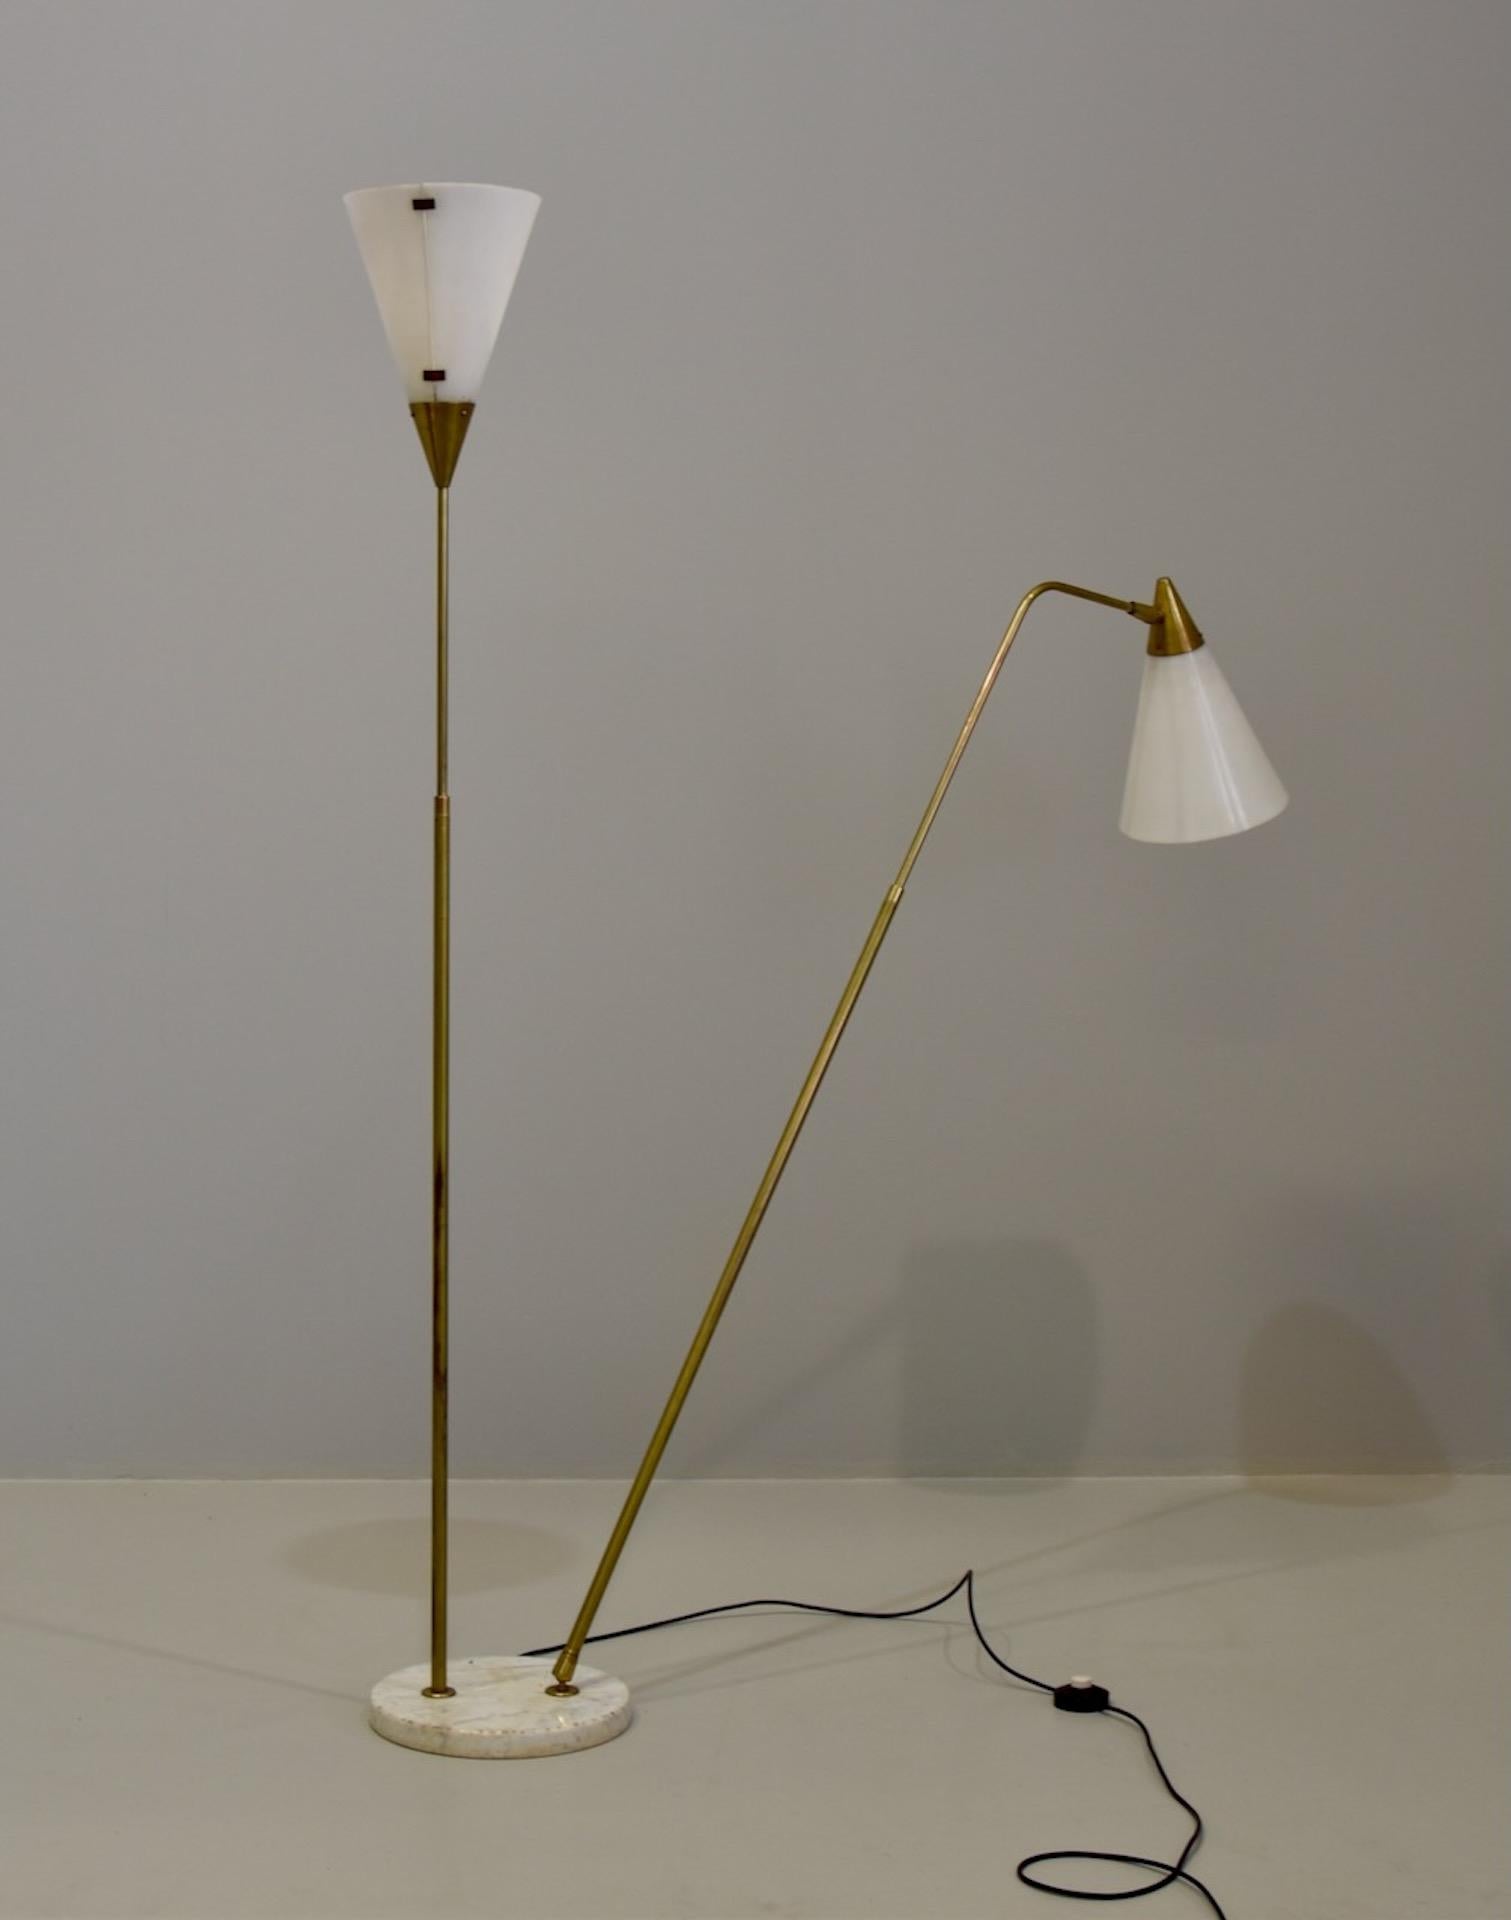 Giuseppe Ostuni Rare Adjustable Floor Lamp, Brass, Acrylic, O-Luce, Italy, 1950s For Sale 4